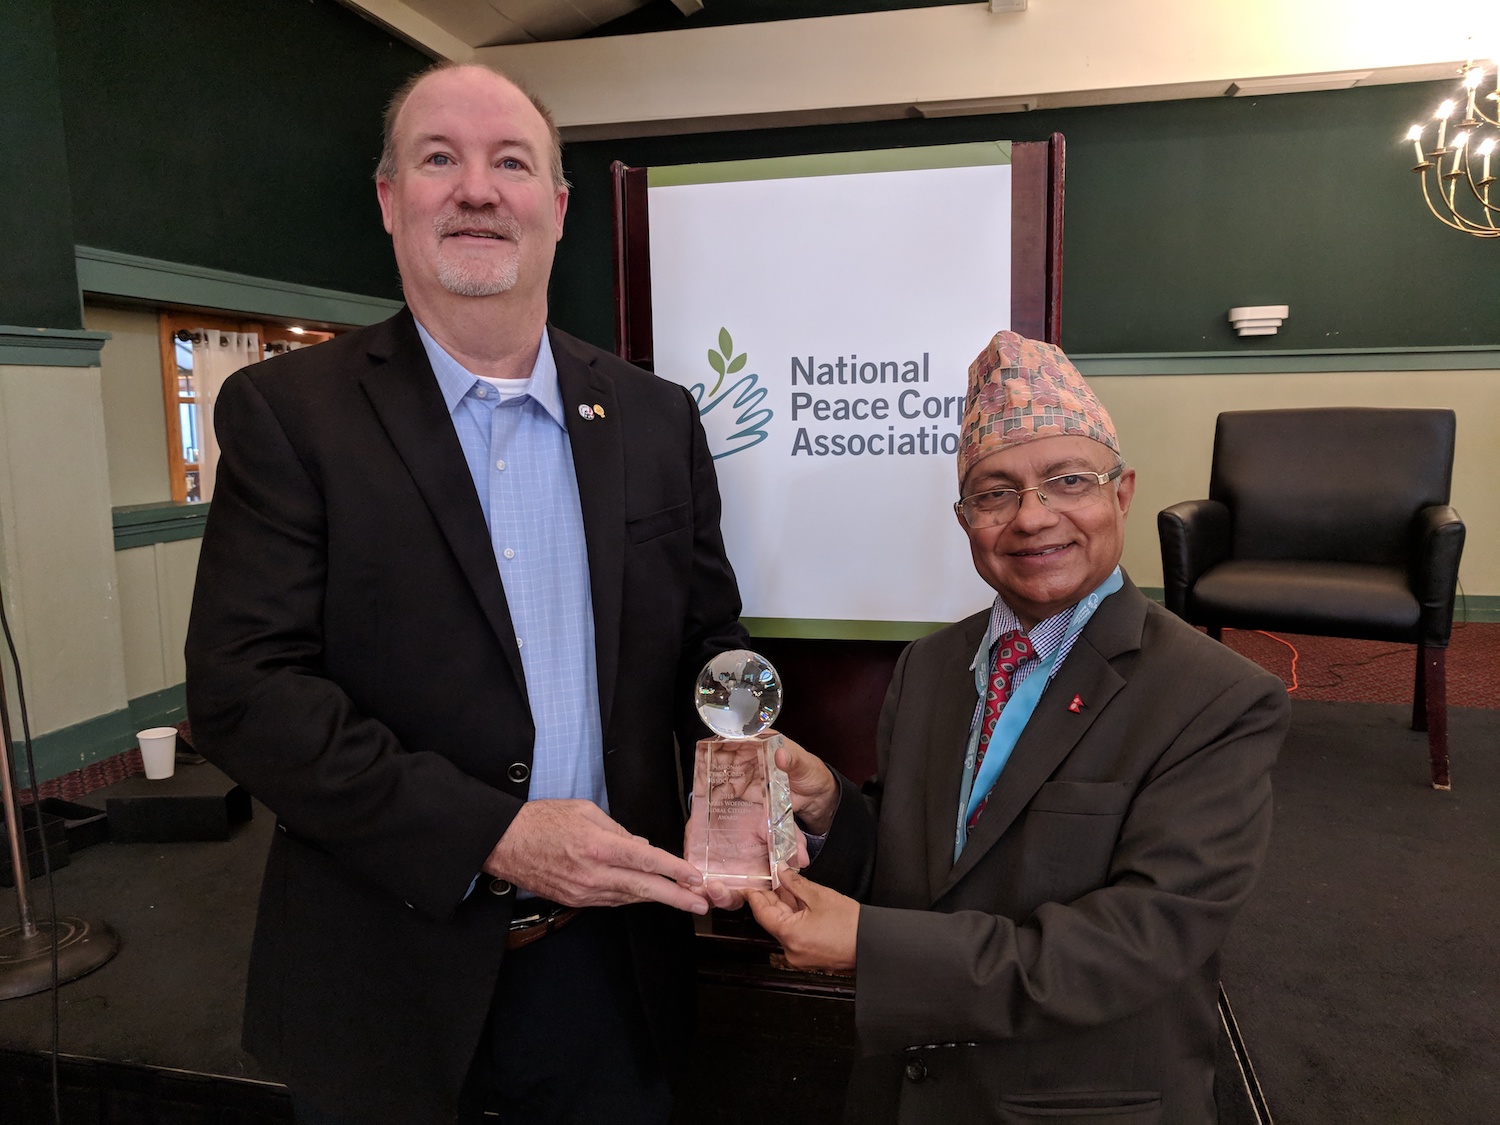 UN Nepali Diplomat Kul Gautam accepts Harris Wofford Global Citizenship Award from National Peace Corps Association President Glenn Blumhorst.